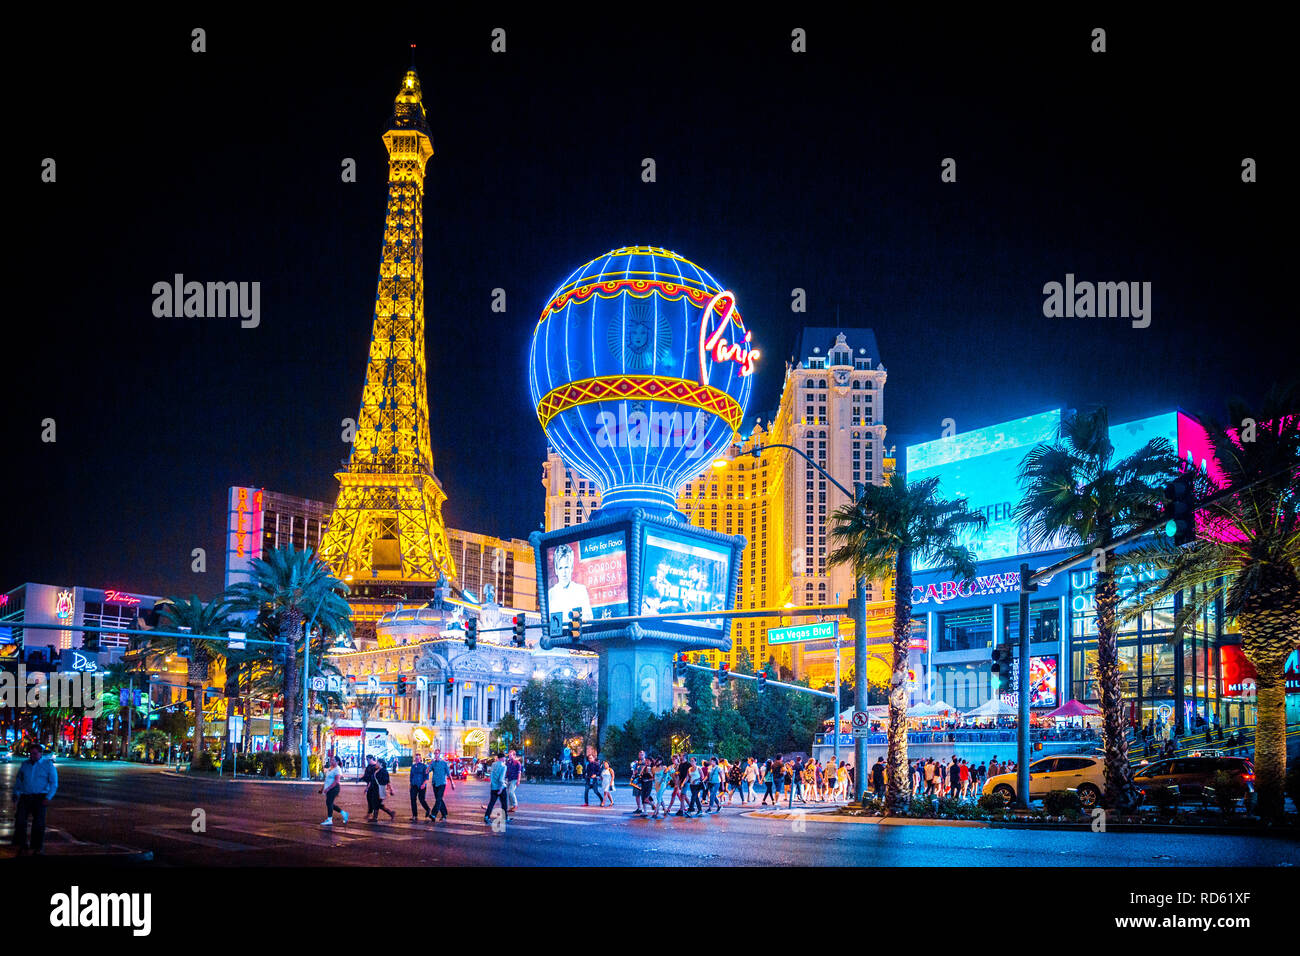 La vue classique du centre-ville de Las Vegas coloré avec la bande de renommée mondiale et Paris Las Vegas hotel et casino de nuit Banque D'Images